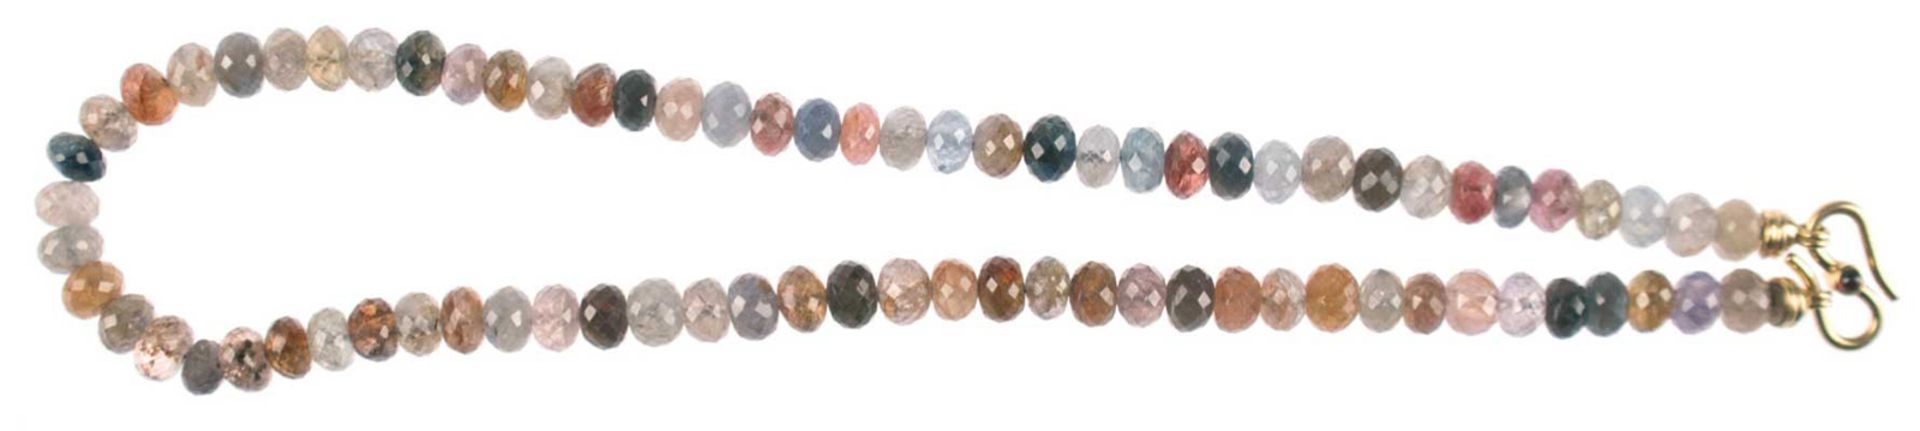 Diamant-Kette, multicolor, ges. ca. 230 ct., bestehend aus 77 facettiert geschliffenen Diamanten in